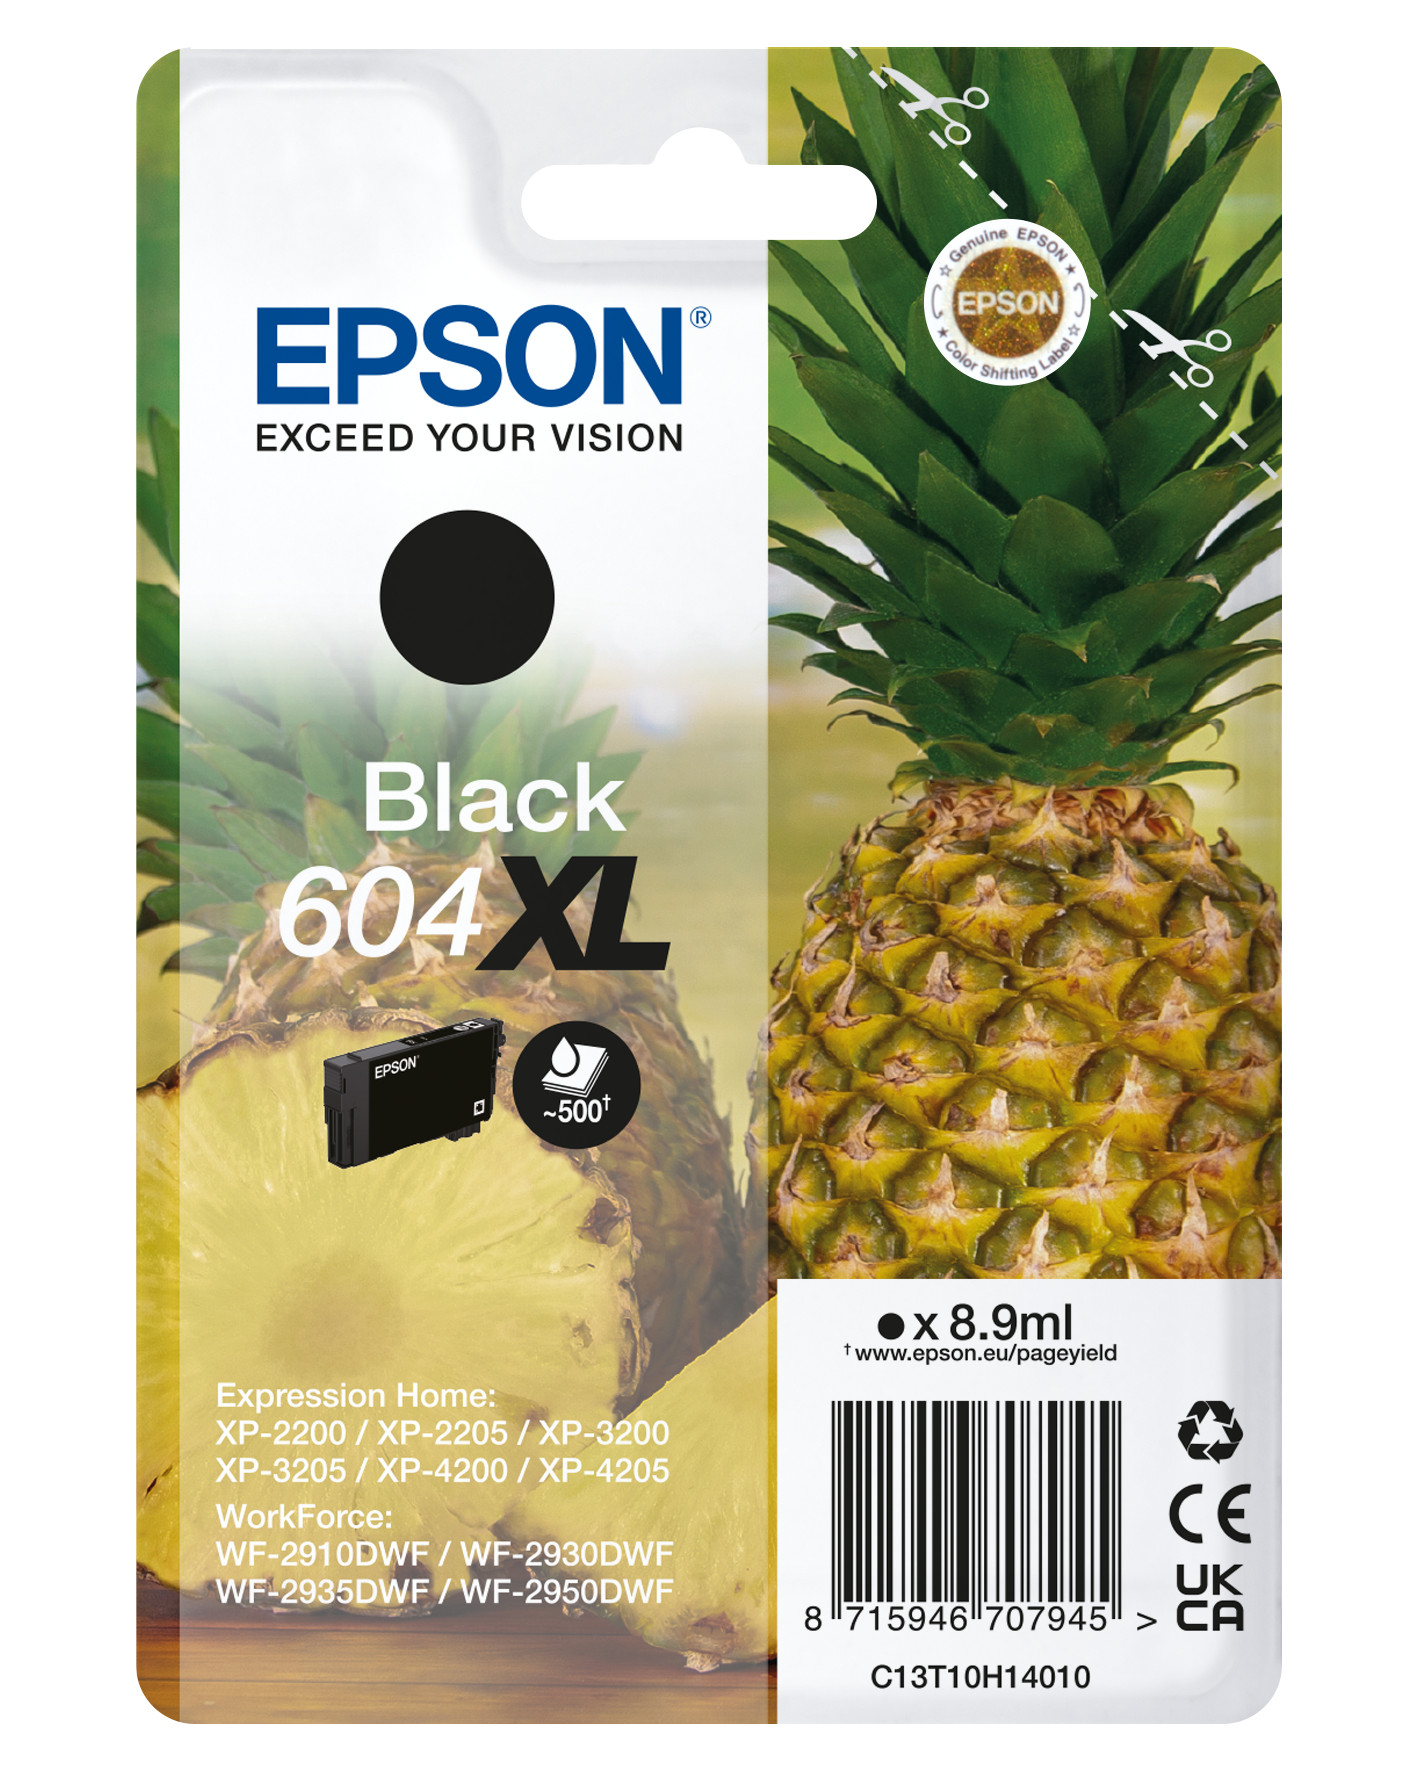 Epson Multifunción Expression Home XP-2200 Wifi :: Senianet